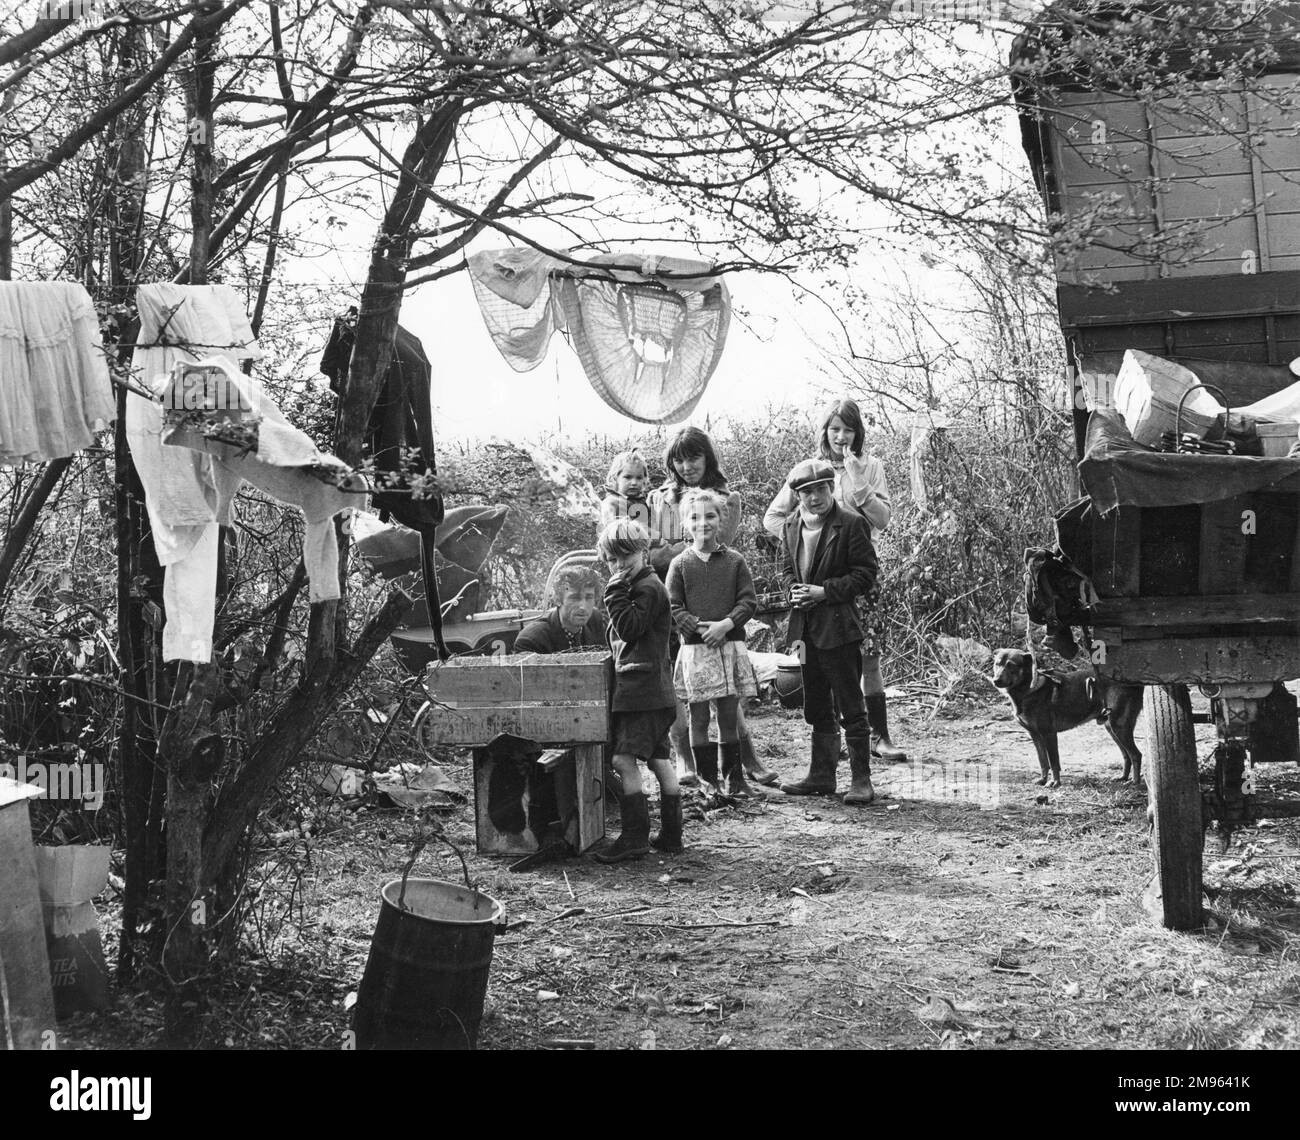 Serbian Gypsies [1904]